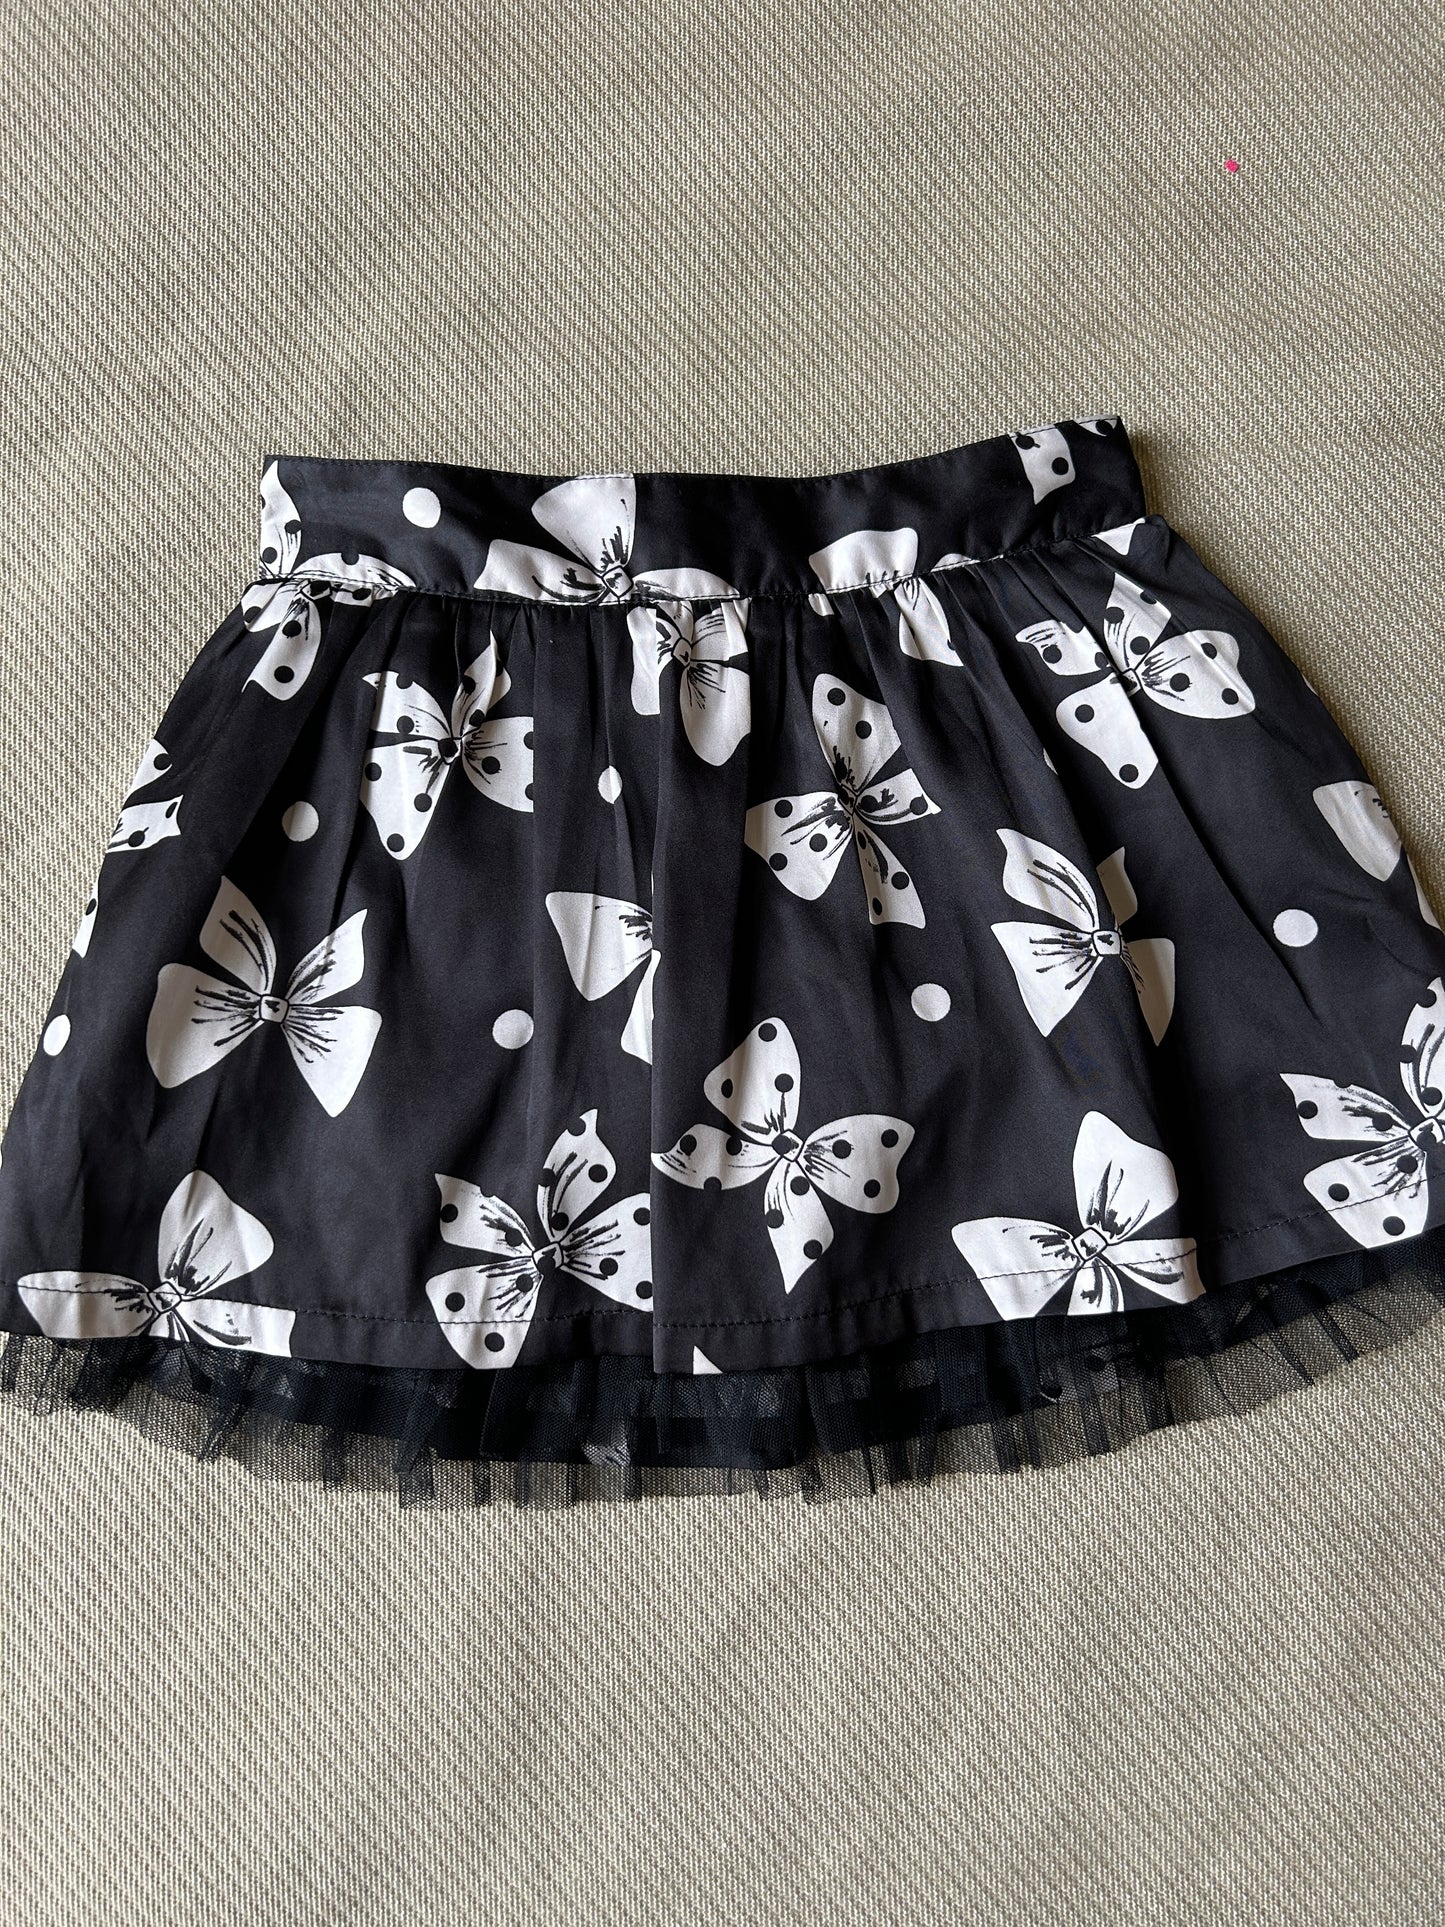 Sonoma/Girl's Silky Skirt/Black & Cream/Size 5